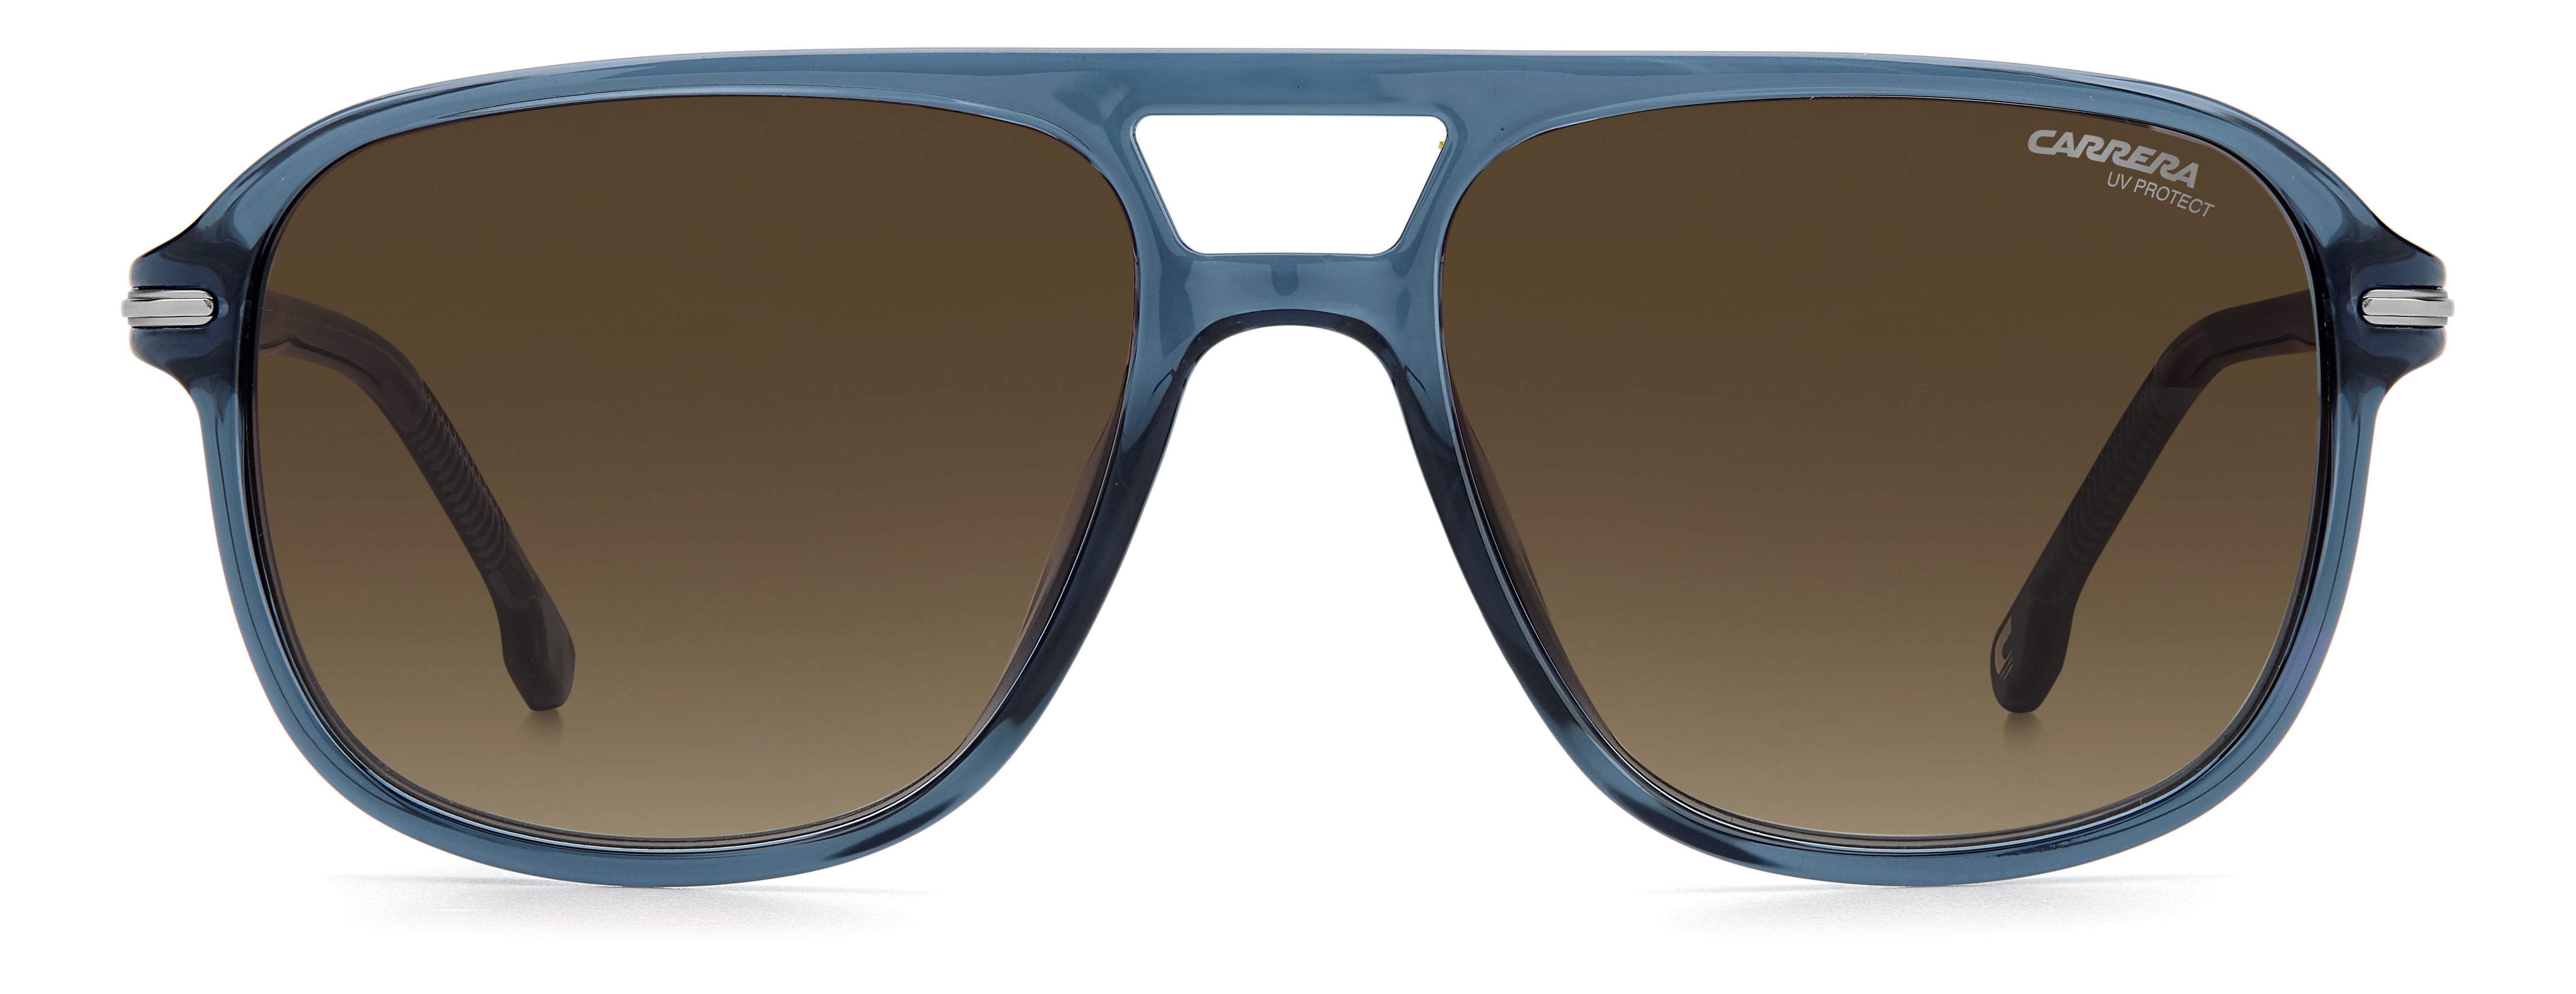 Carrera Navigator Sunglasses 279 – 